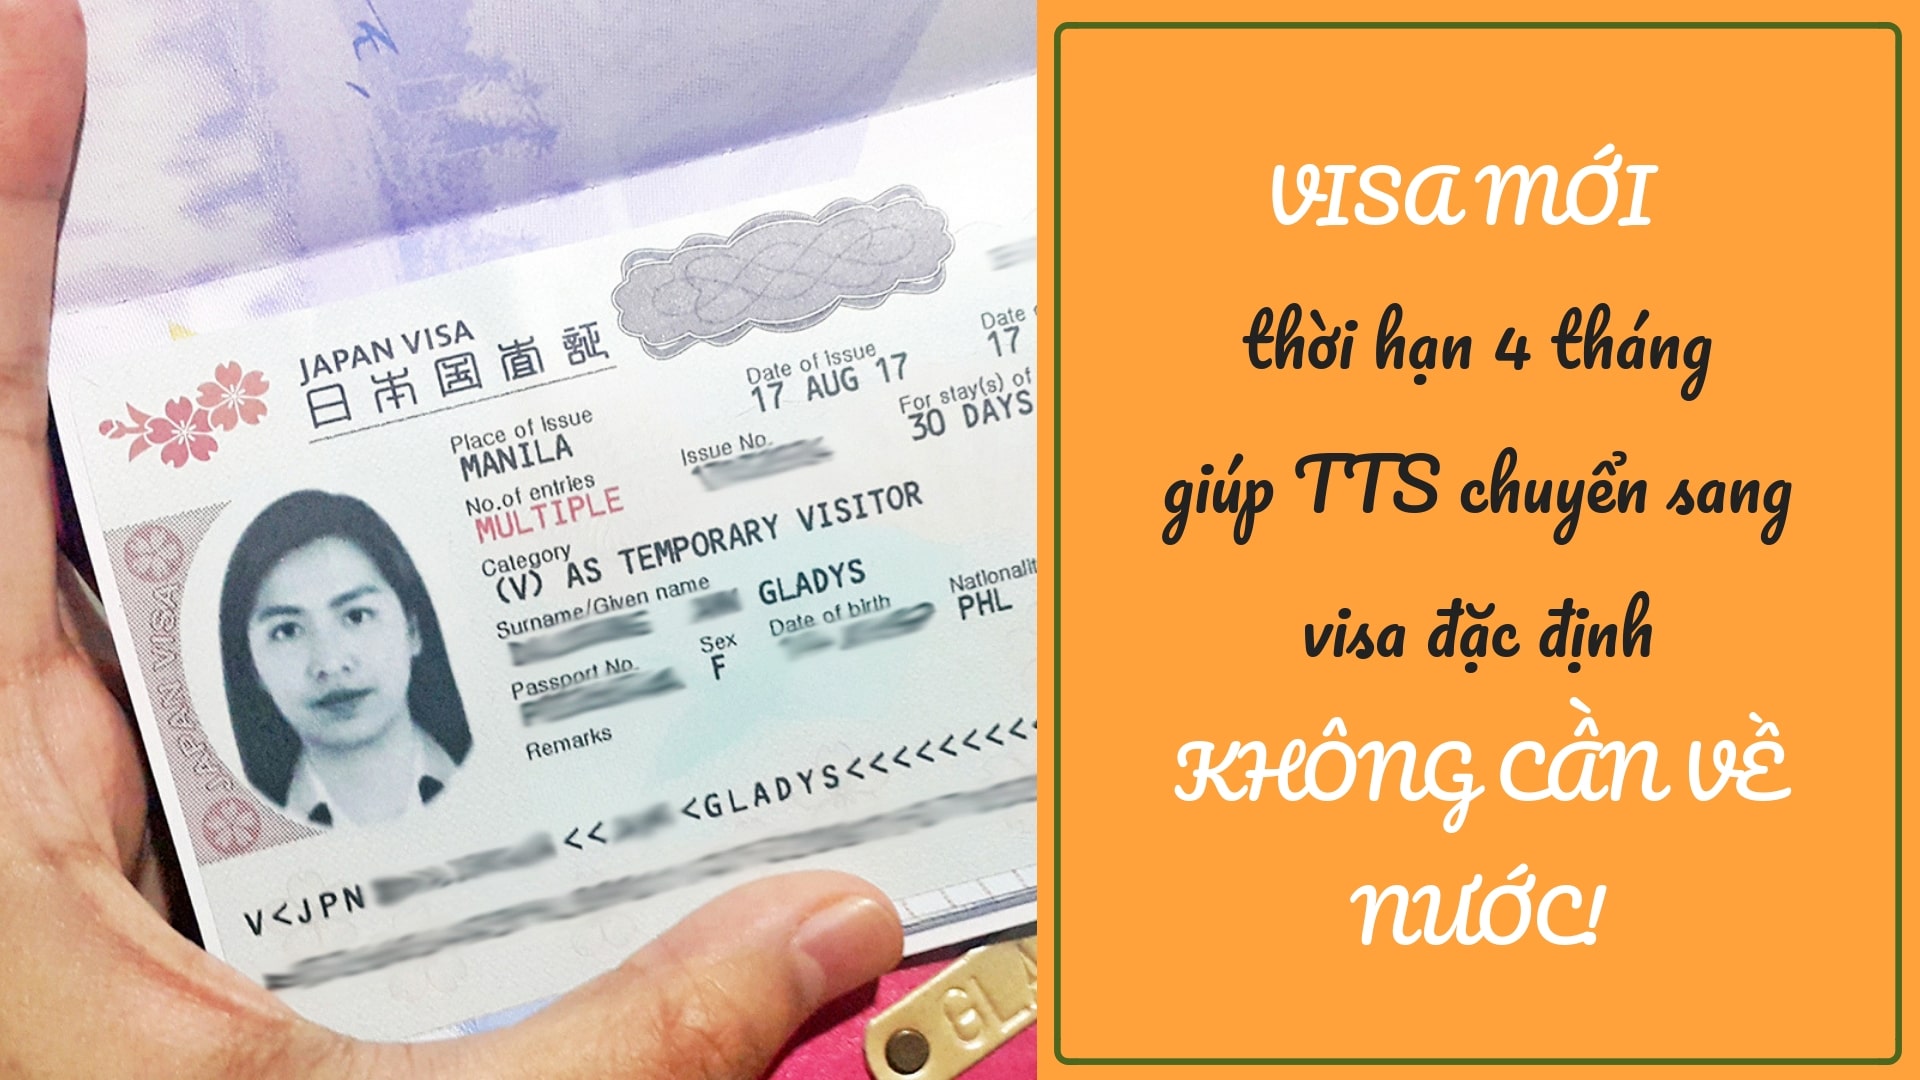 VISA MỚI  thời hạn 4 tháng – giúp TTS chuyển sang visa đặc định KHÔNG CẦN VỀ NƯỚC!